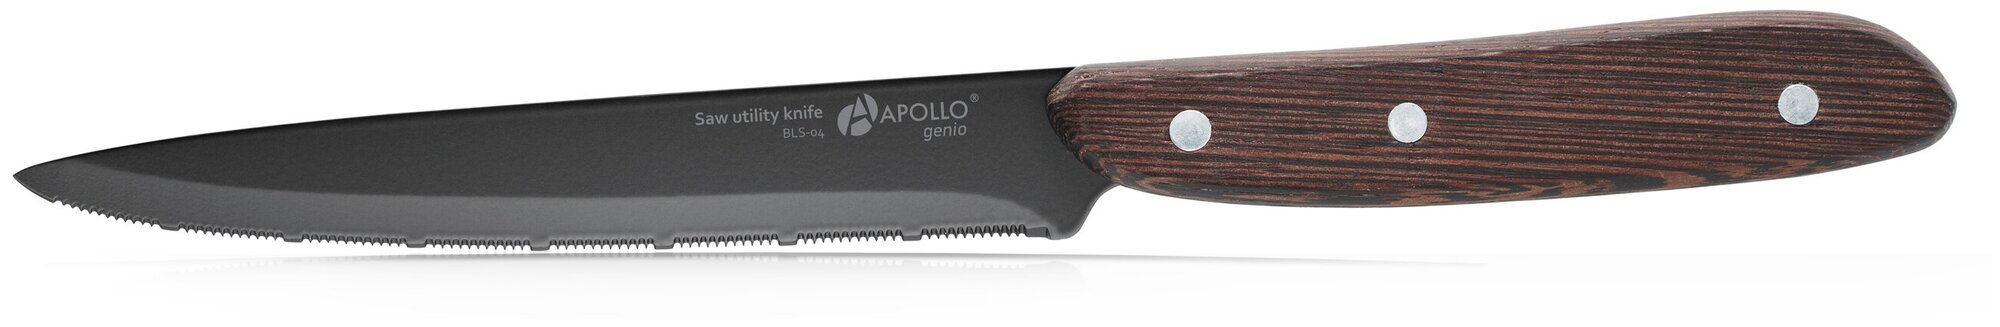 Нож для нарезки APOLLO genio BlackStar